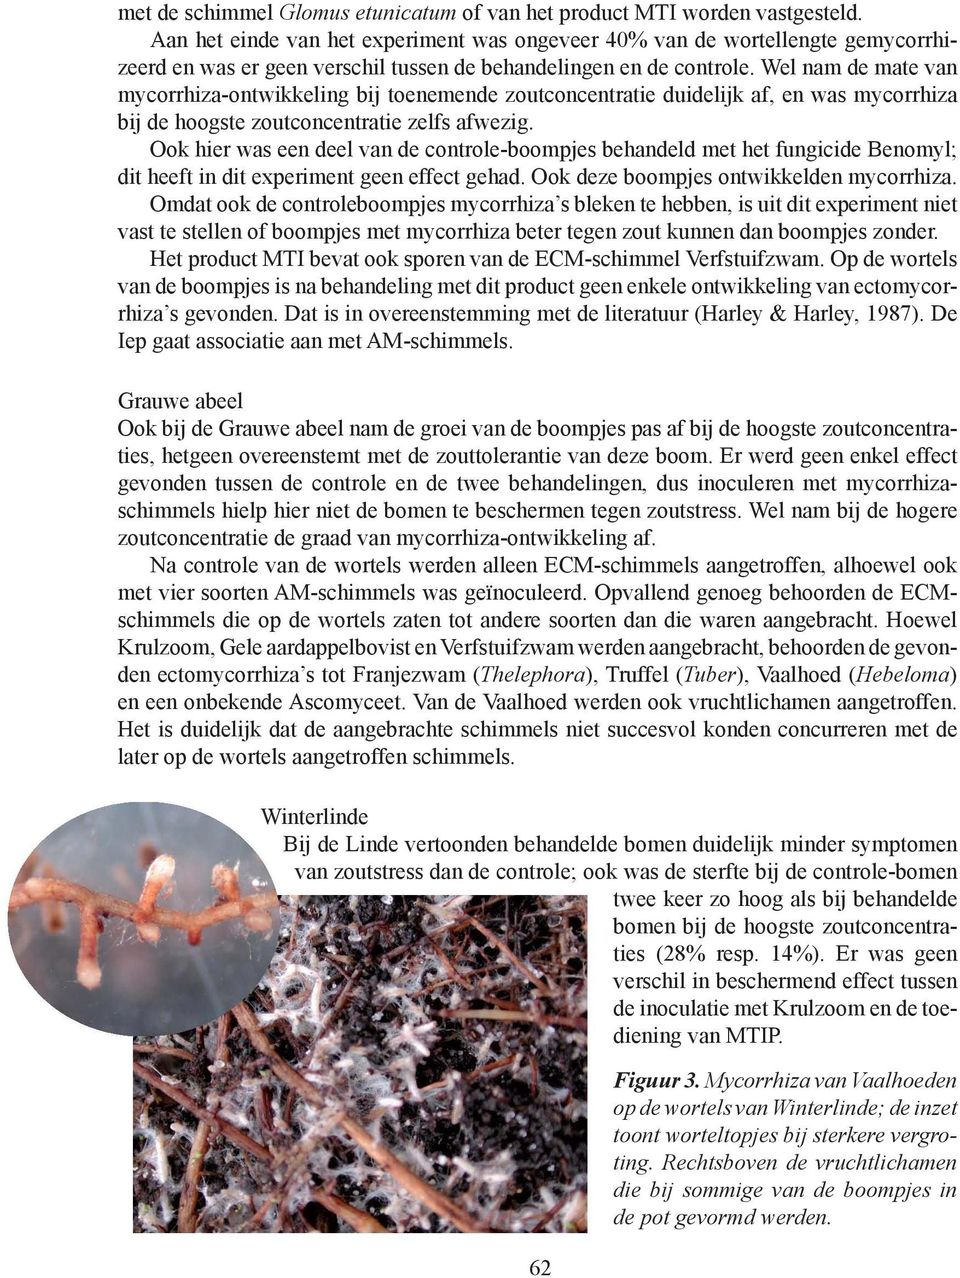 Wel nam de mate van mycorrhiza-ontwikkeling bij toenemende zoutconcentratie duidelijk af, en was mycorrhiza bij de hoogste zoutconcentratie zelfs afwezig.